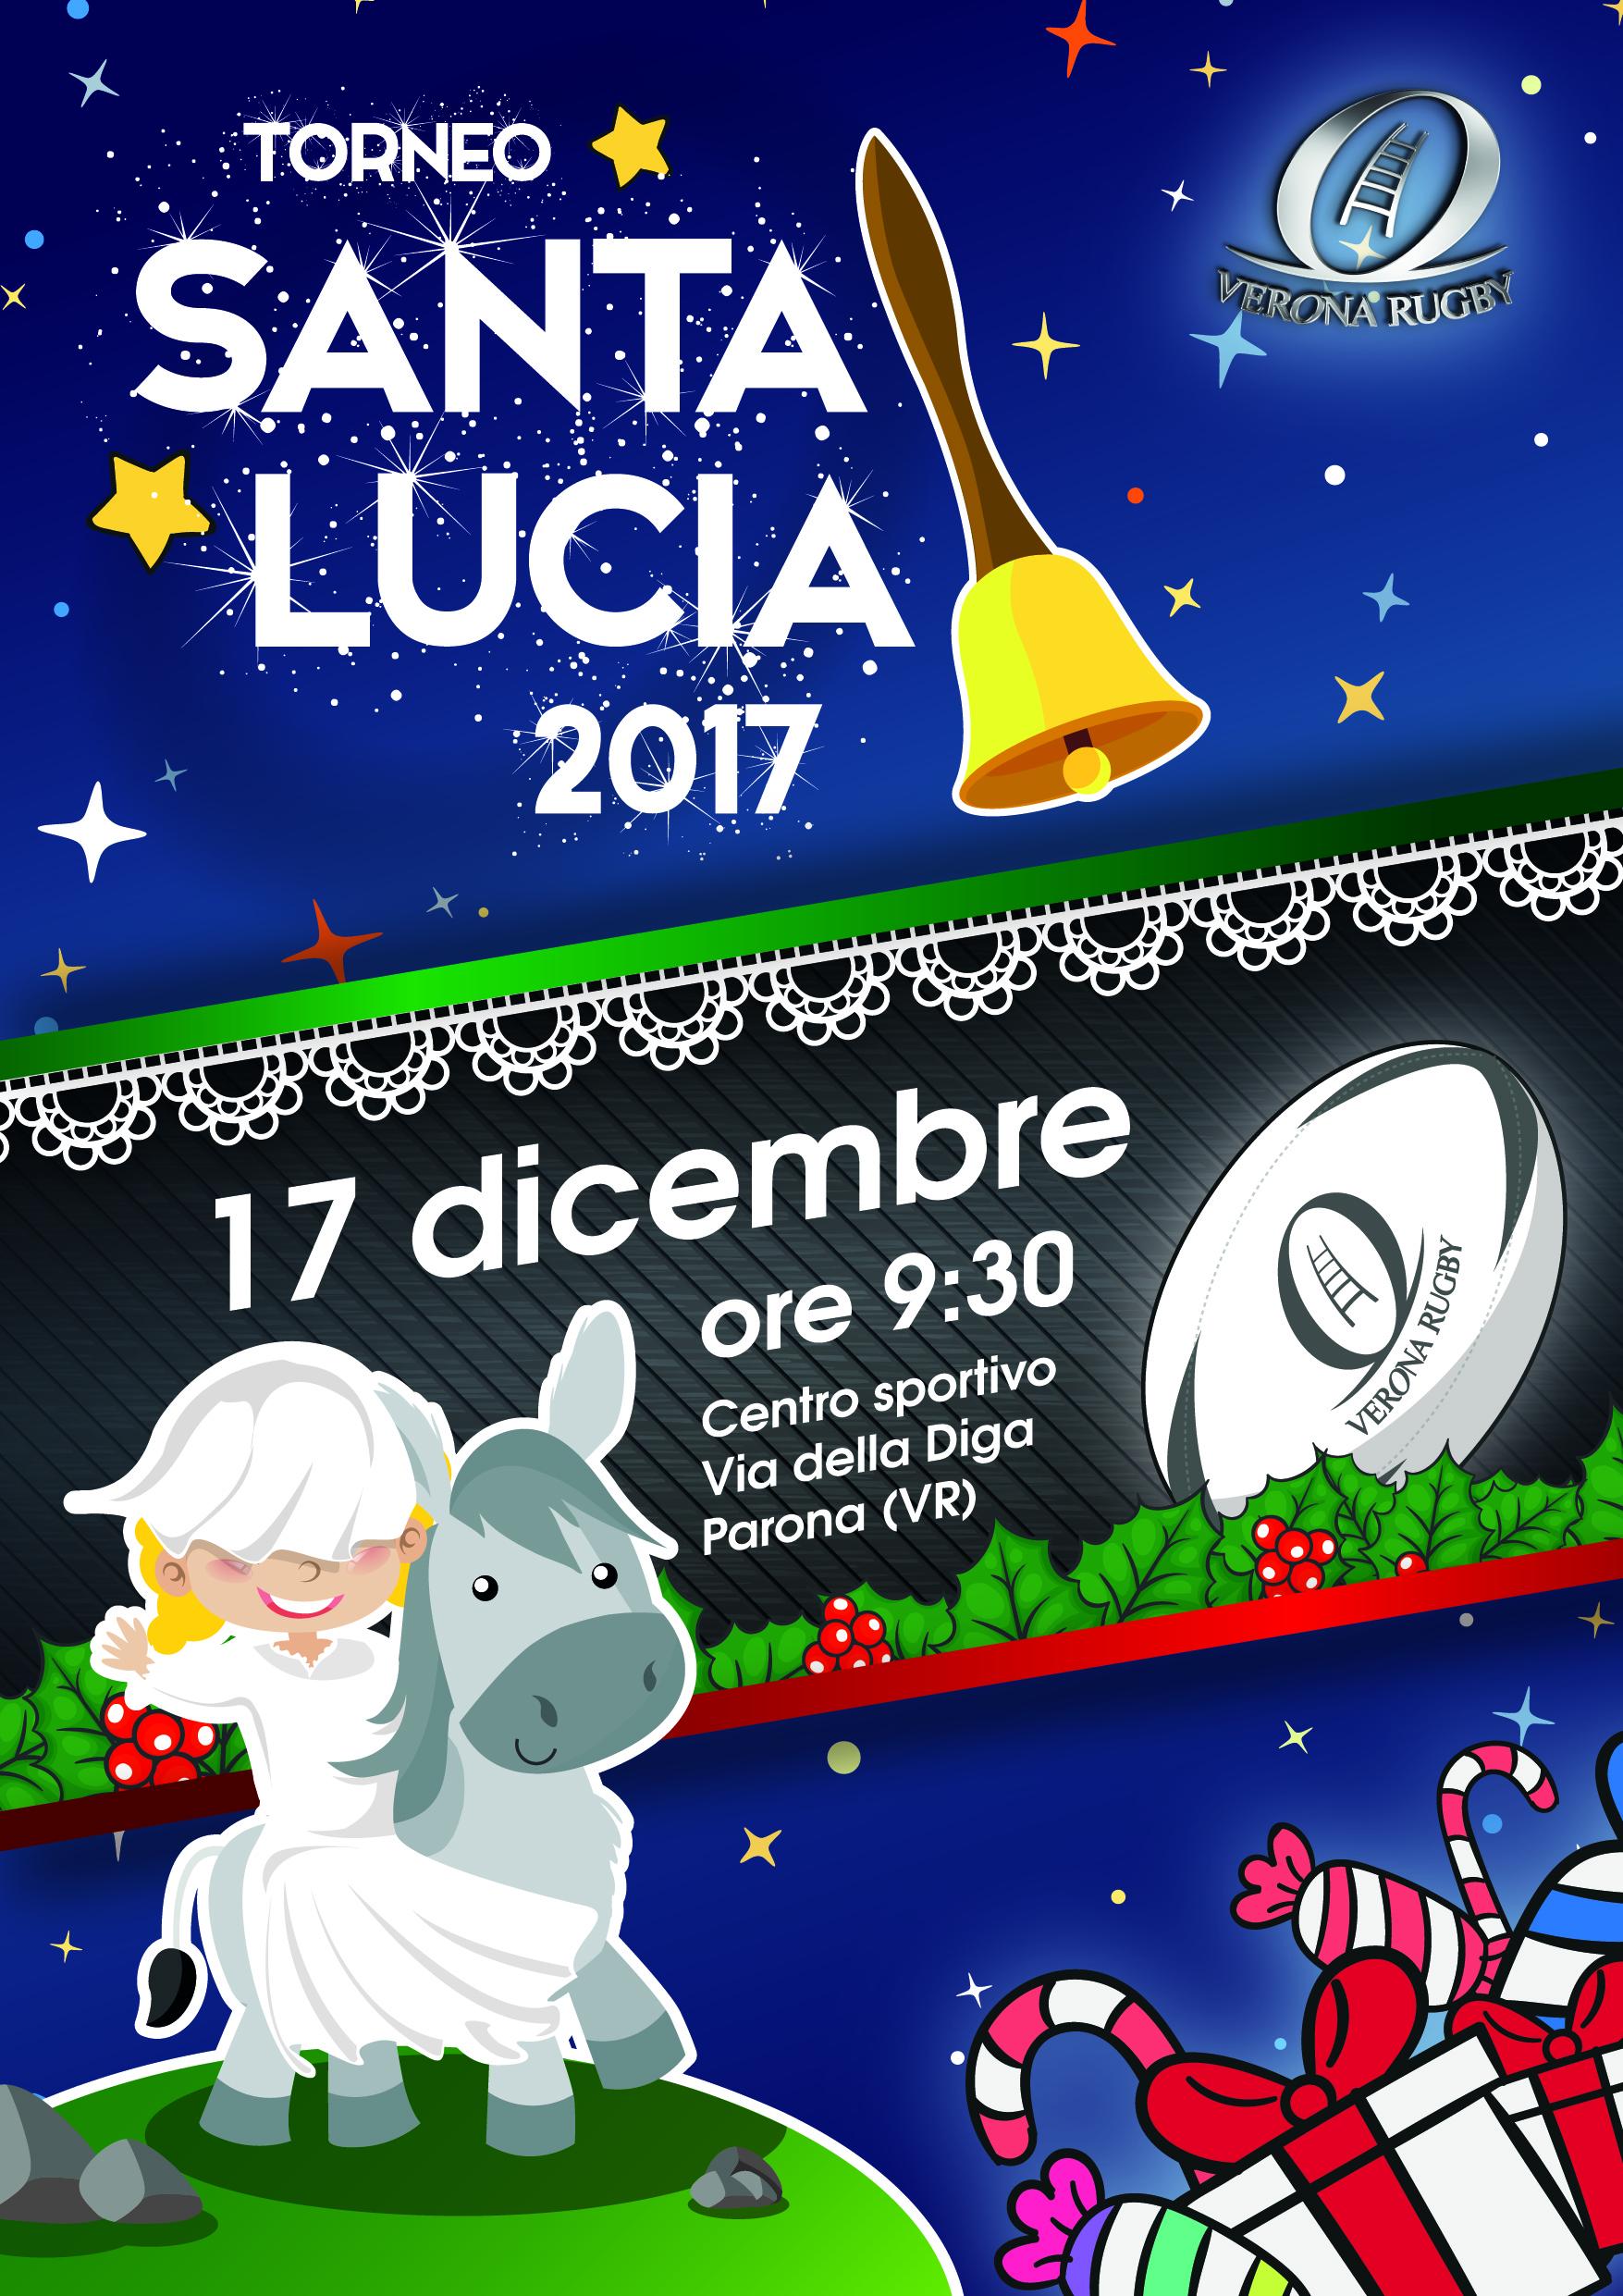 Santa Lucia 2017 aggiornato